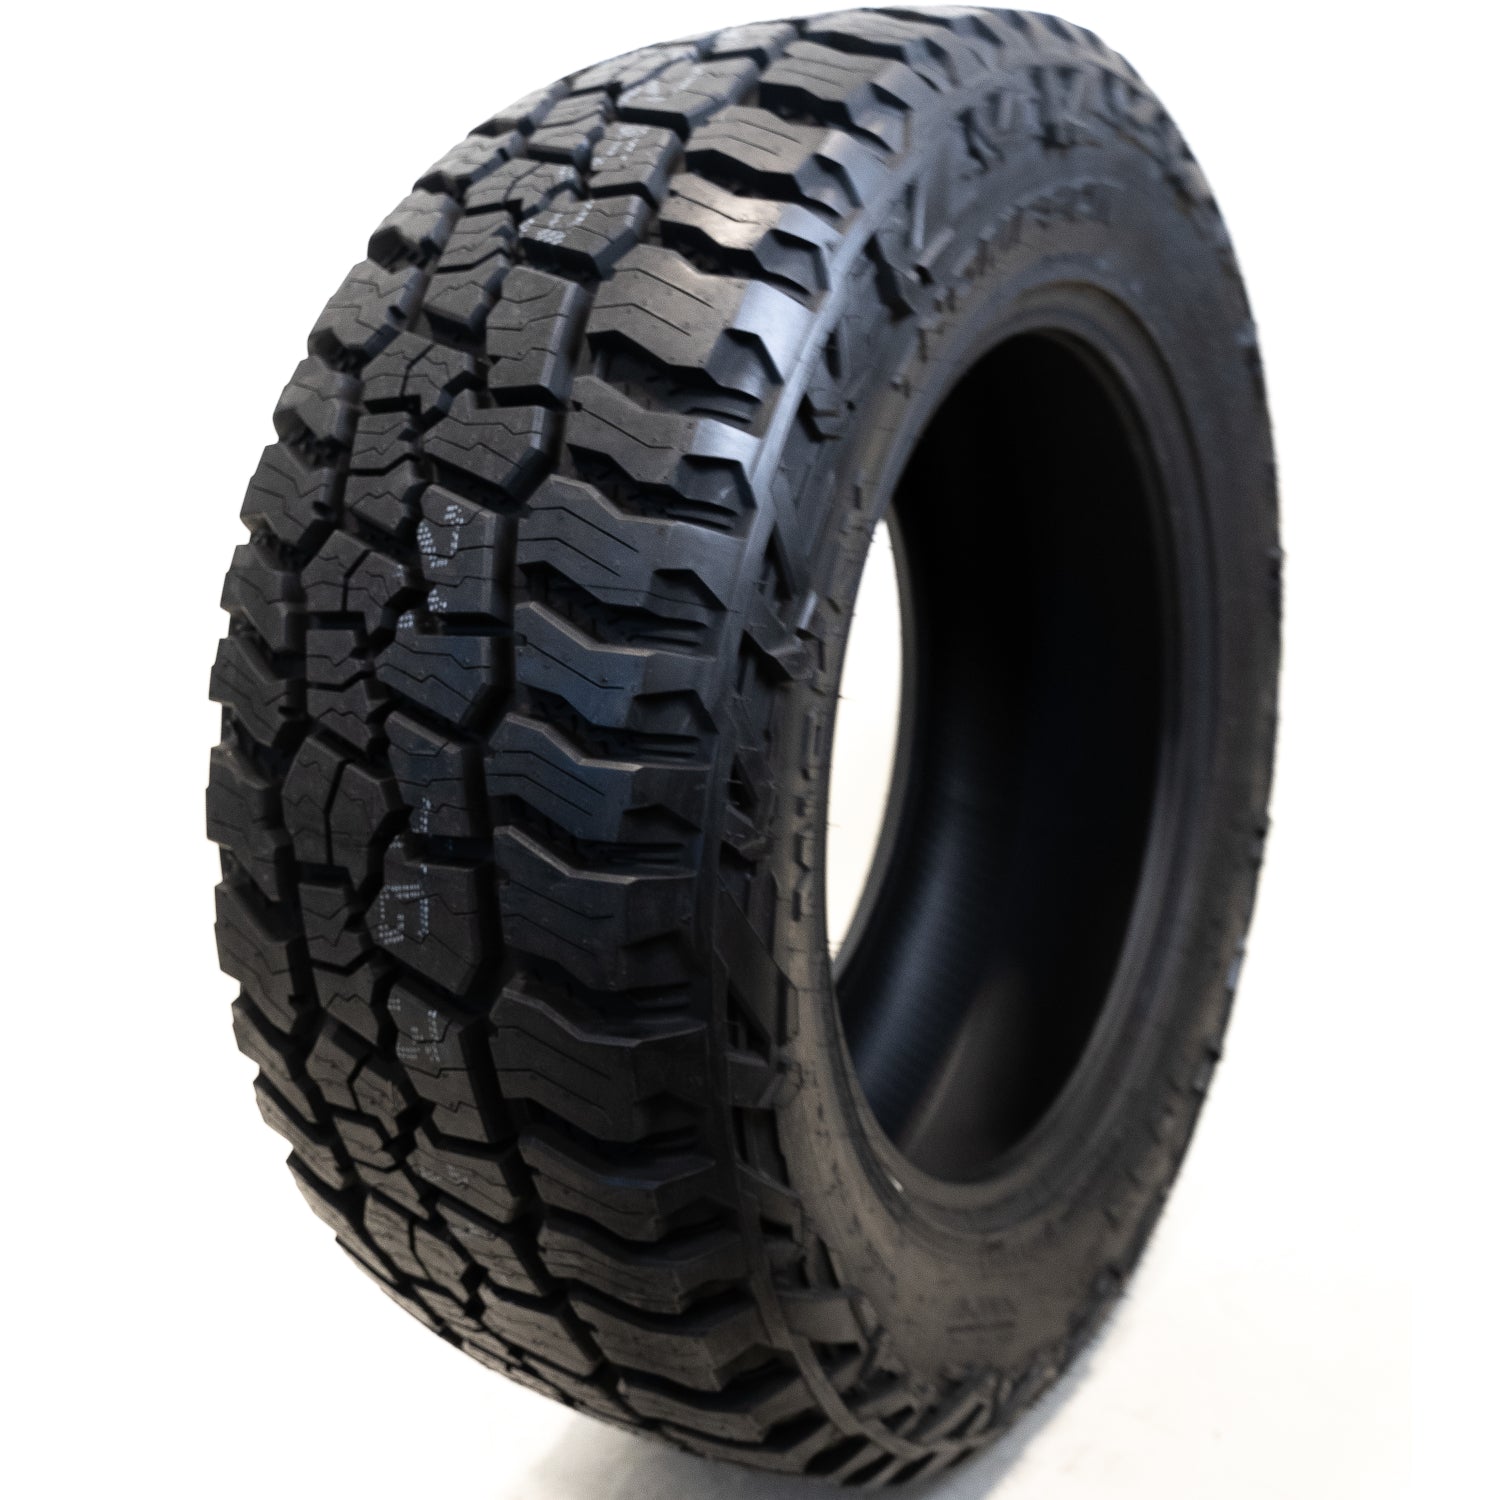 MICKEY THOMPSON BAJA BOSS A/T LT265/75R16 (31.7X10.4R 16) Tires